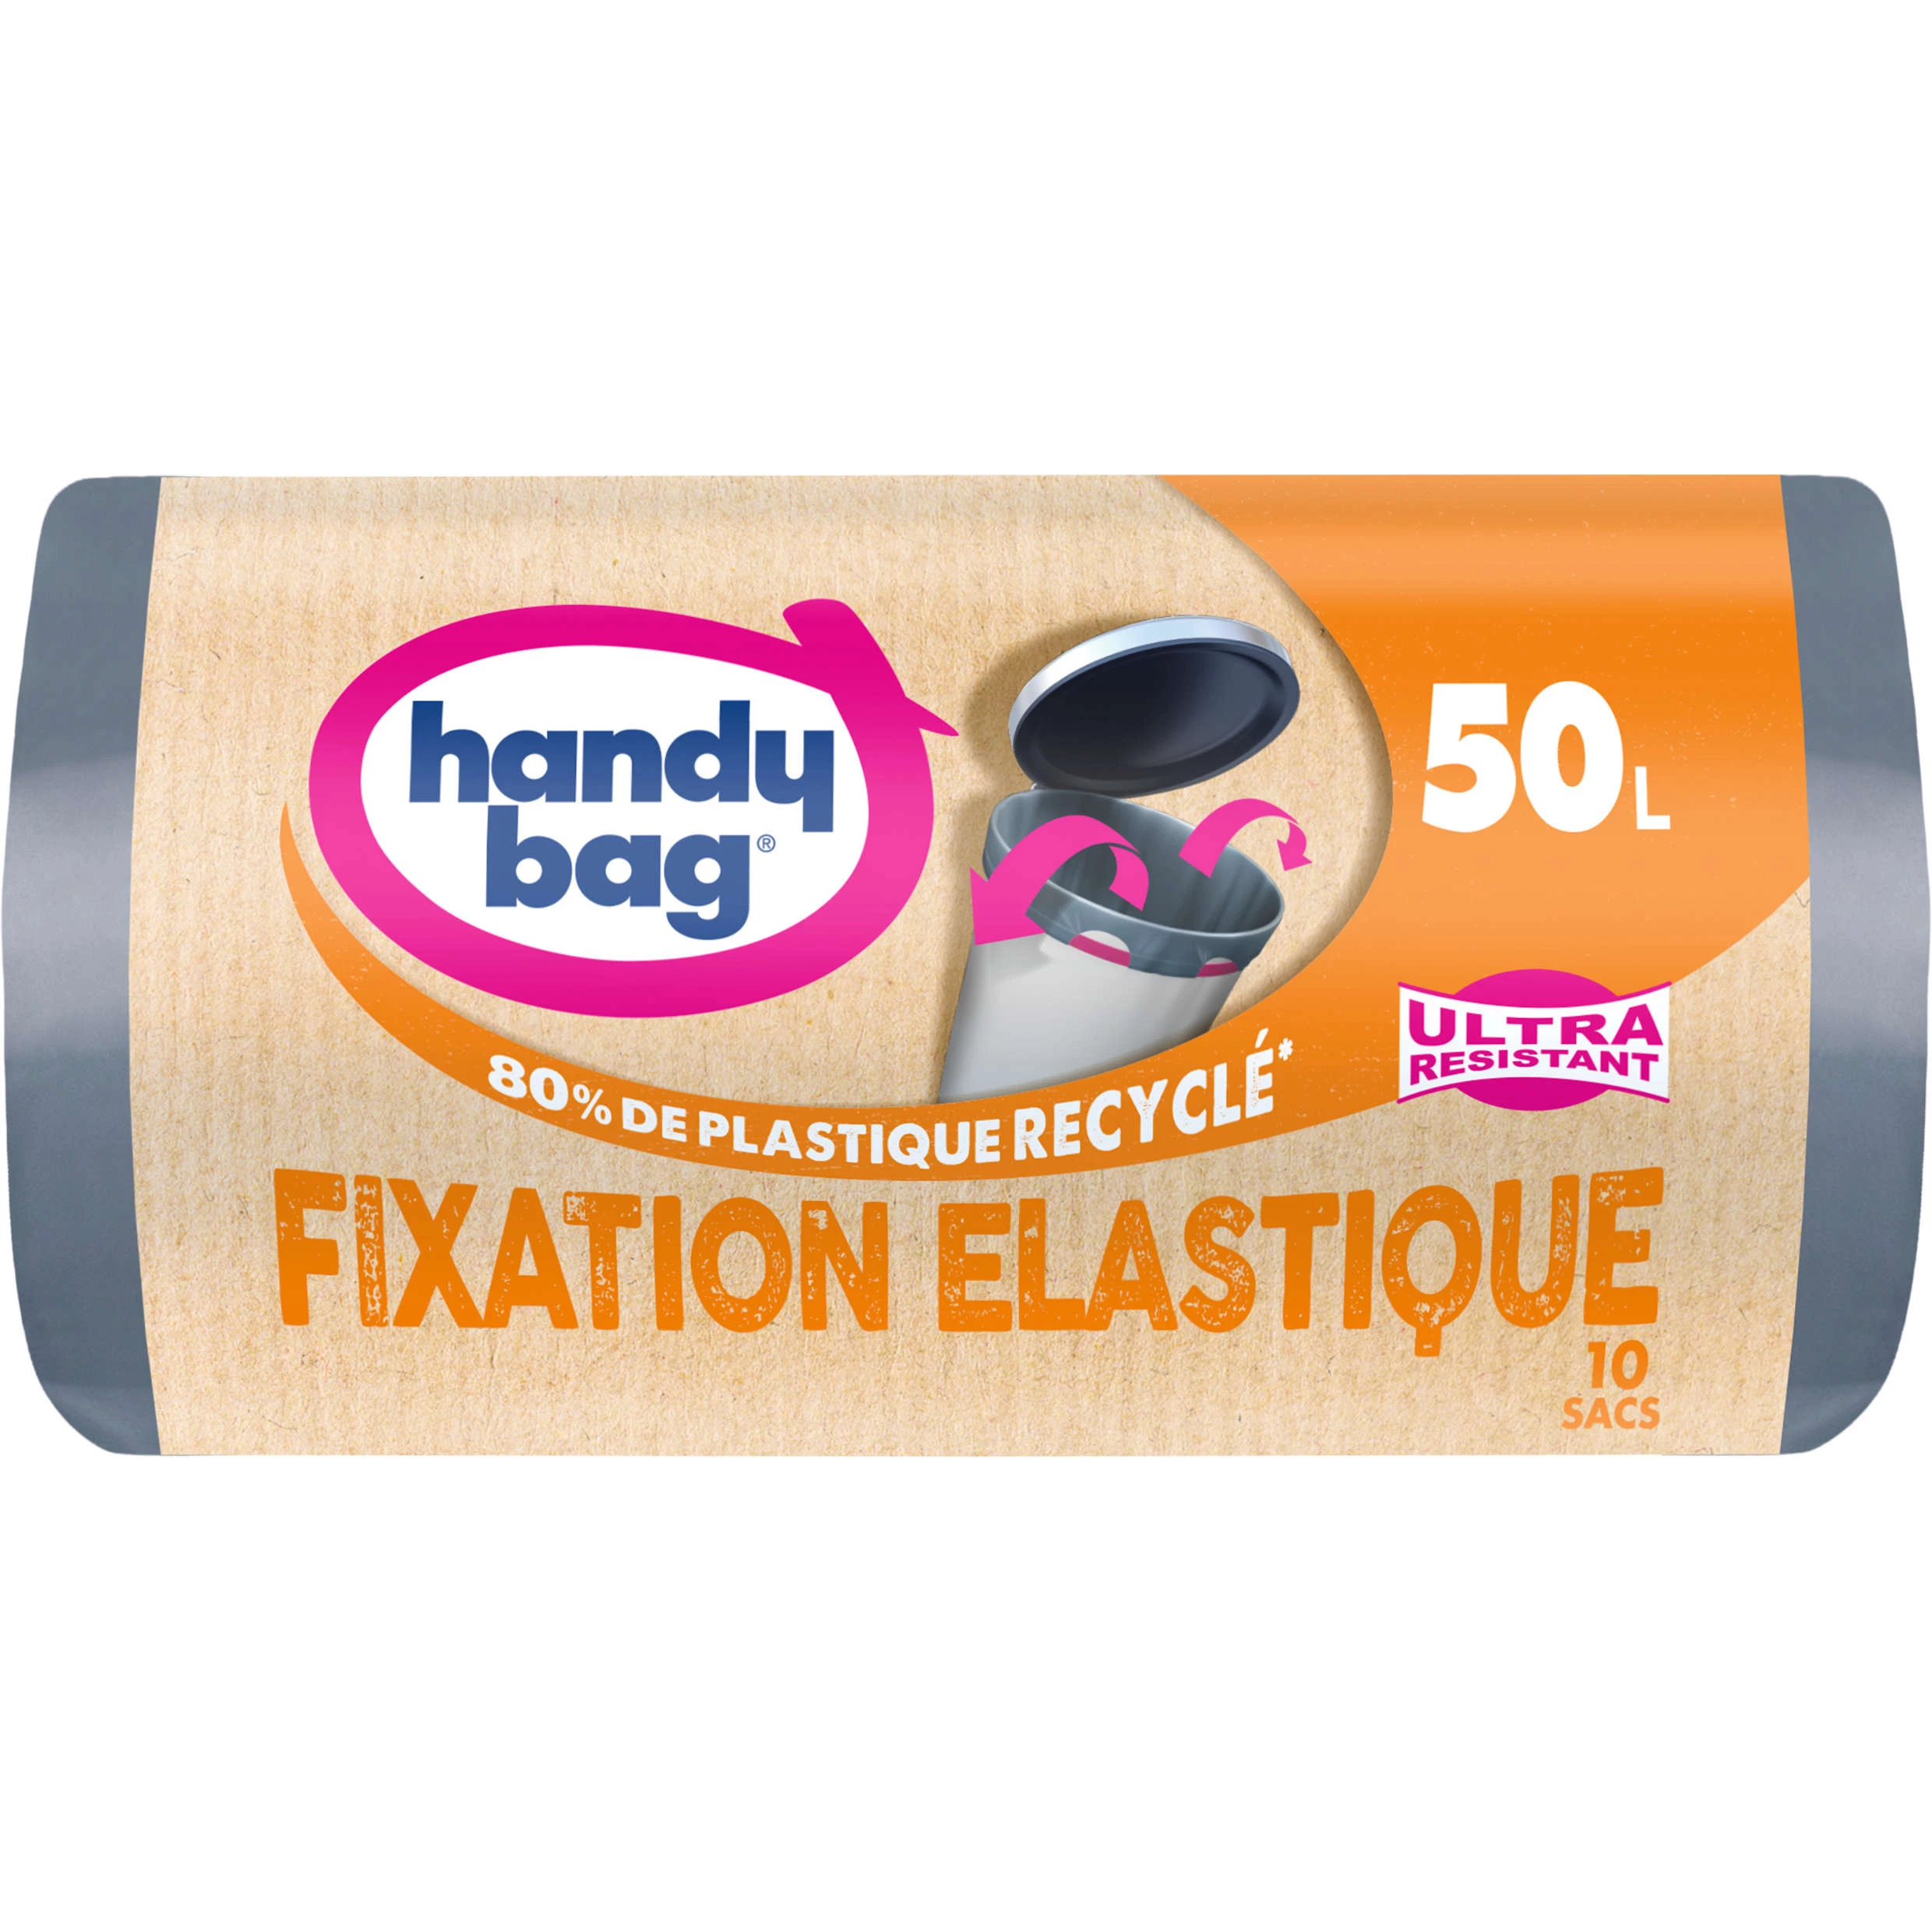 Sac poubelle ultra résistant fixation elastique X10 50L - HANDY BAG